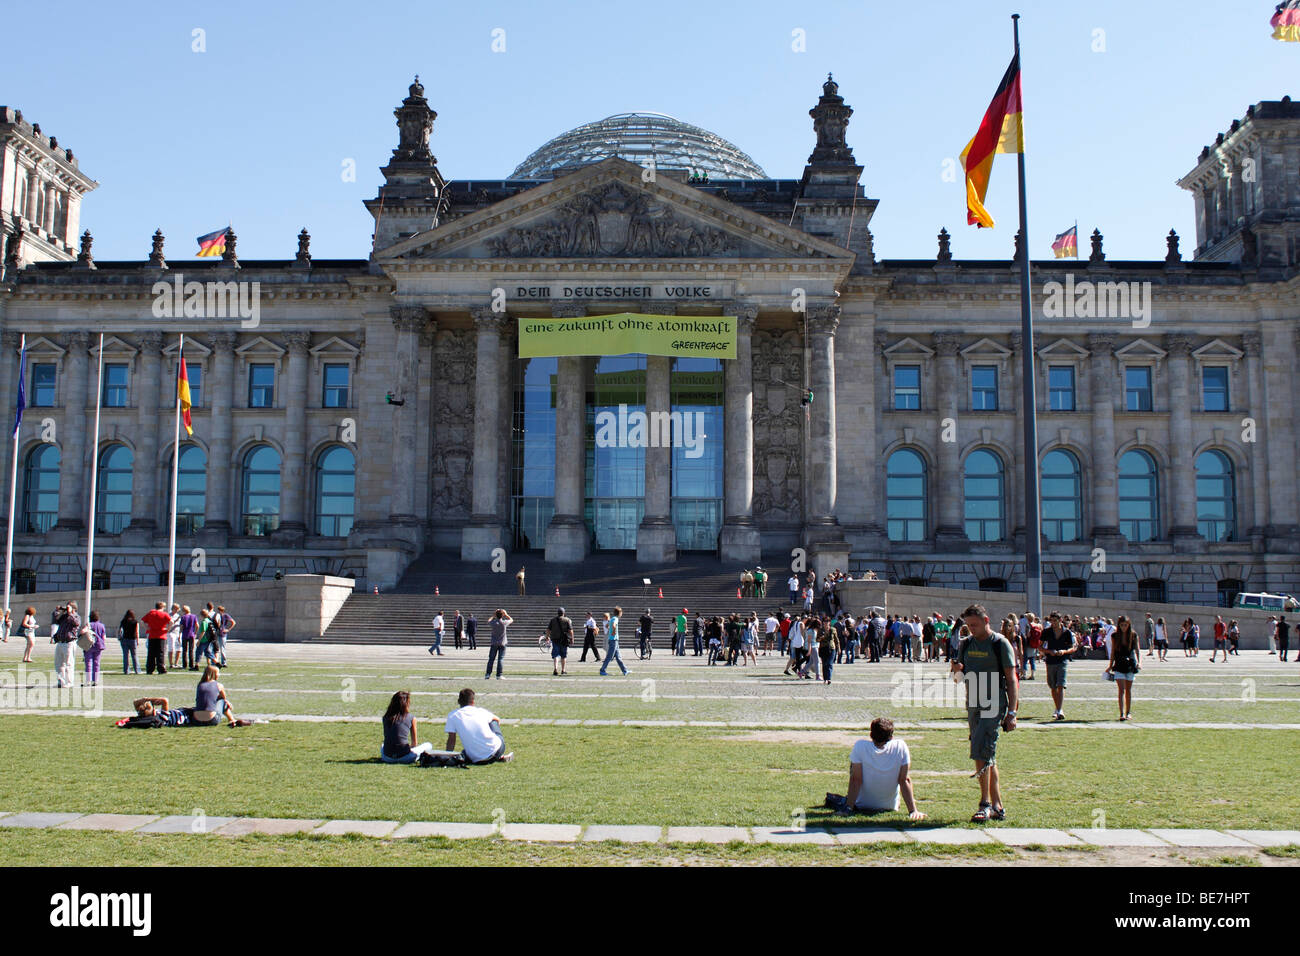 Berlín, el edificio del Reichstag. Ue/DE/DEU/GER/ Alemania/ capital Berlín. El edificio del Reichstag con la cúpula de cristal en la parte superior Foto de stock